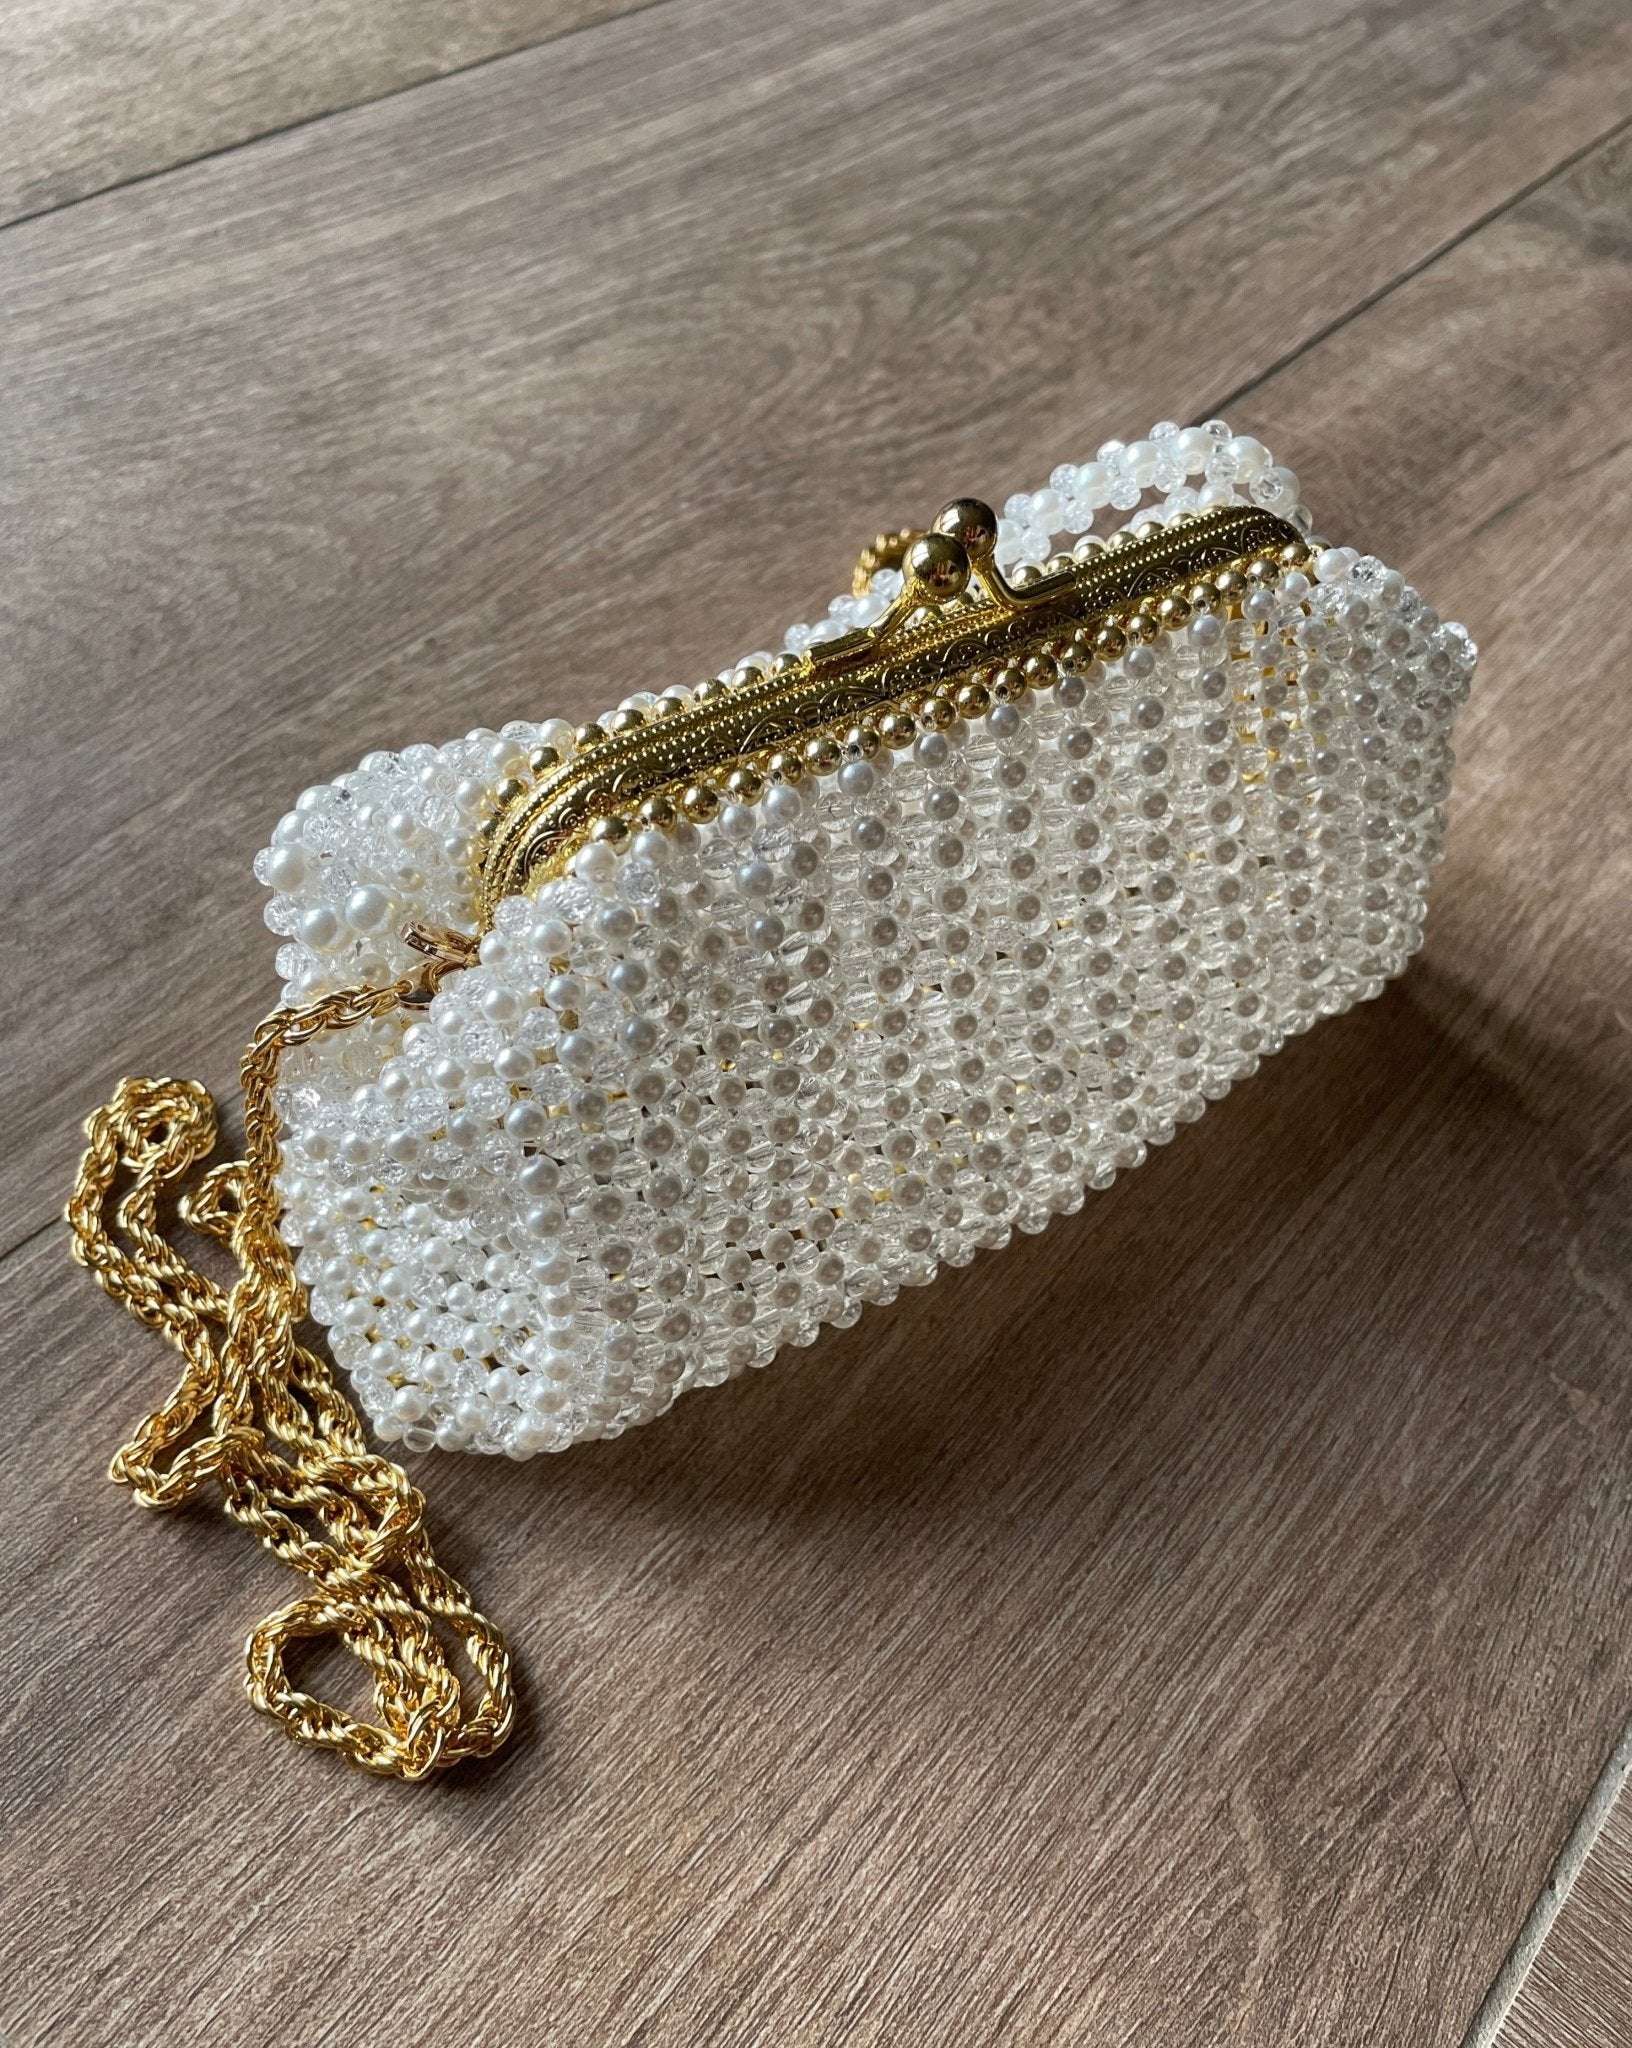 Handtasche in Vintage Style aus Bergkristall klar - GRAYSS FASHION & HOME